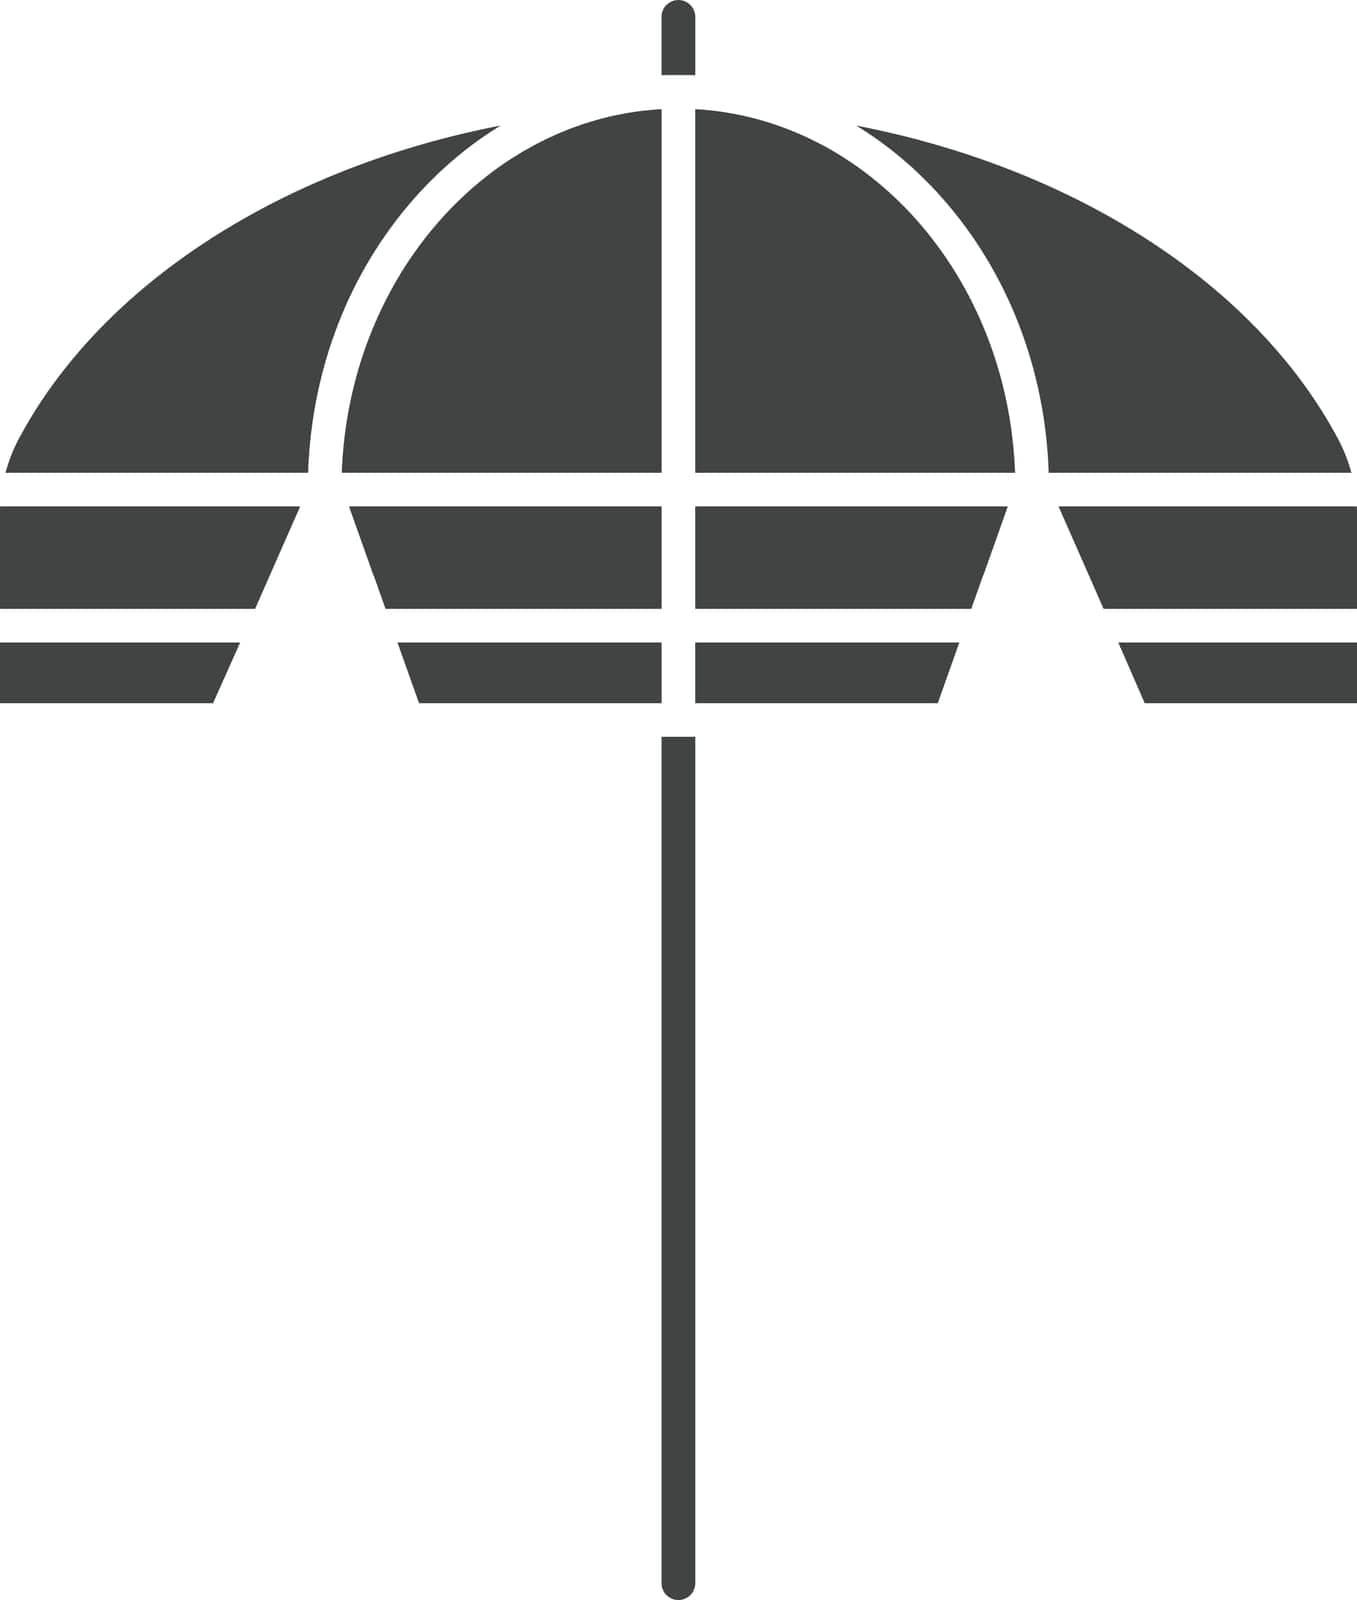 Parasol icon vector image. by ICONBUNNY